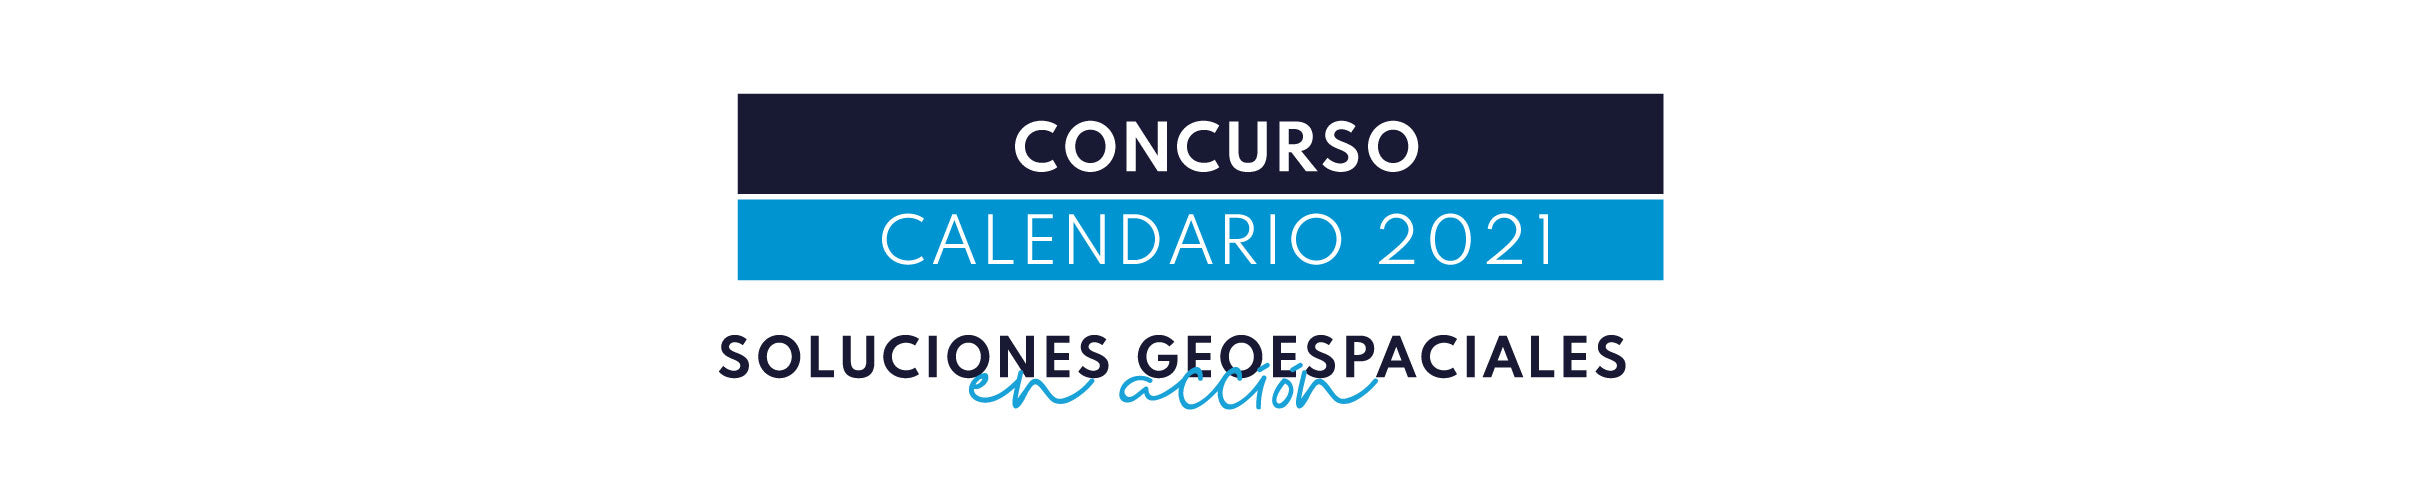 Concurso Calendario edición 2021 GEOCOM